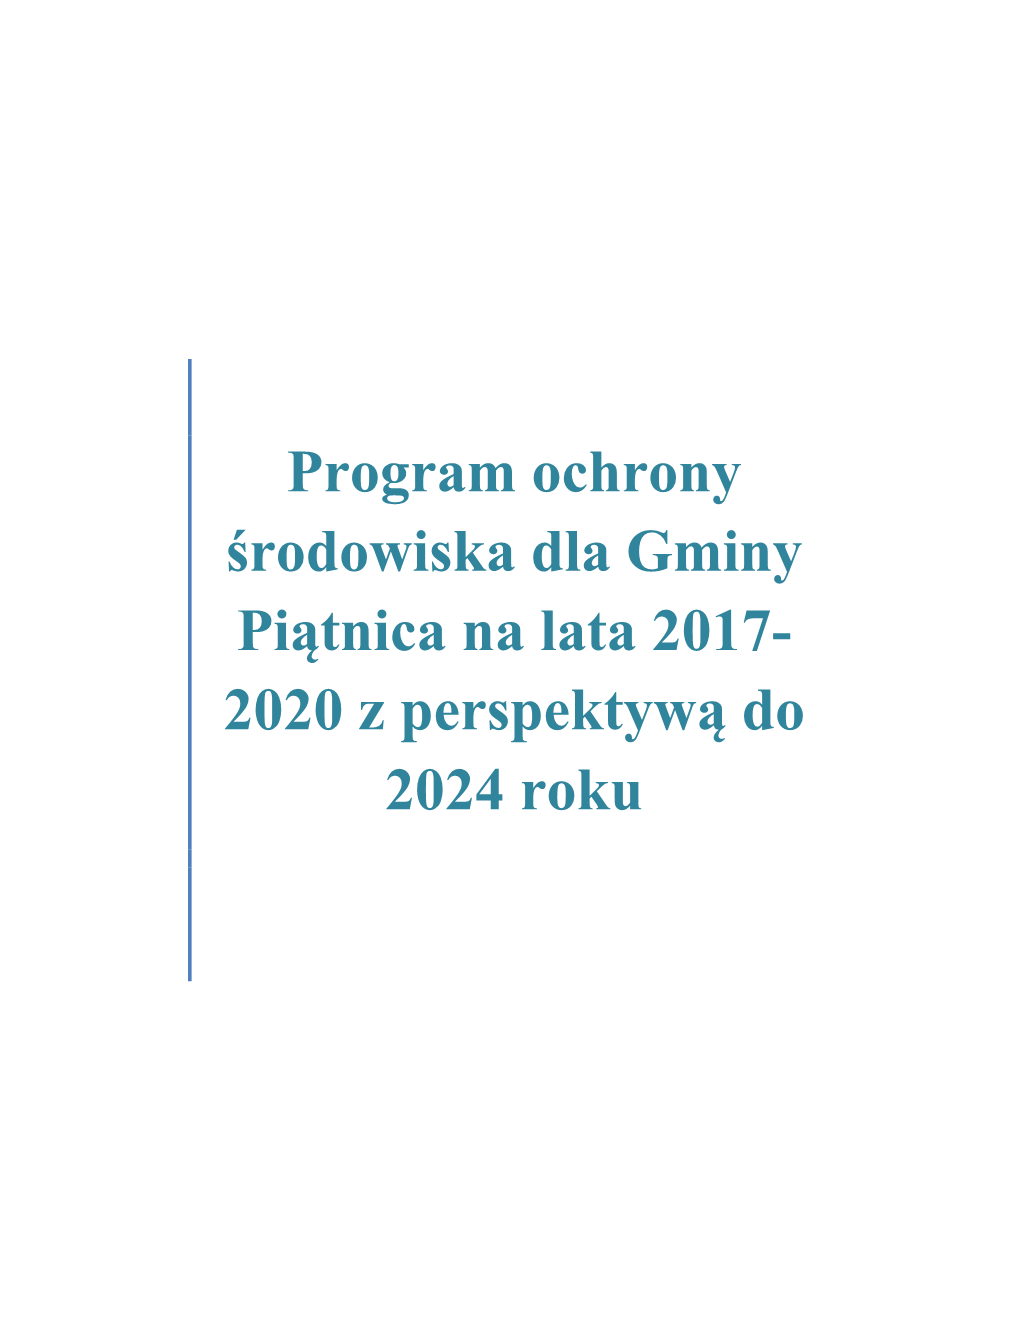 Program Ochrony Środowiska Dla Gminy Piątnica Na Lata 2017-2020 Z